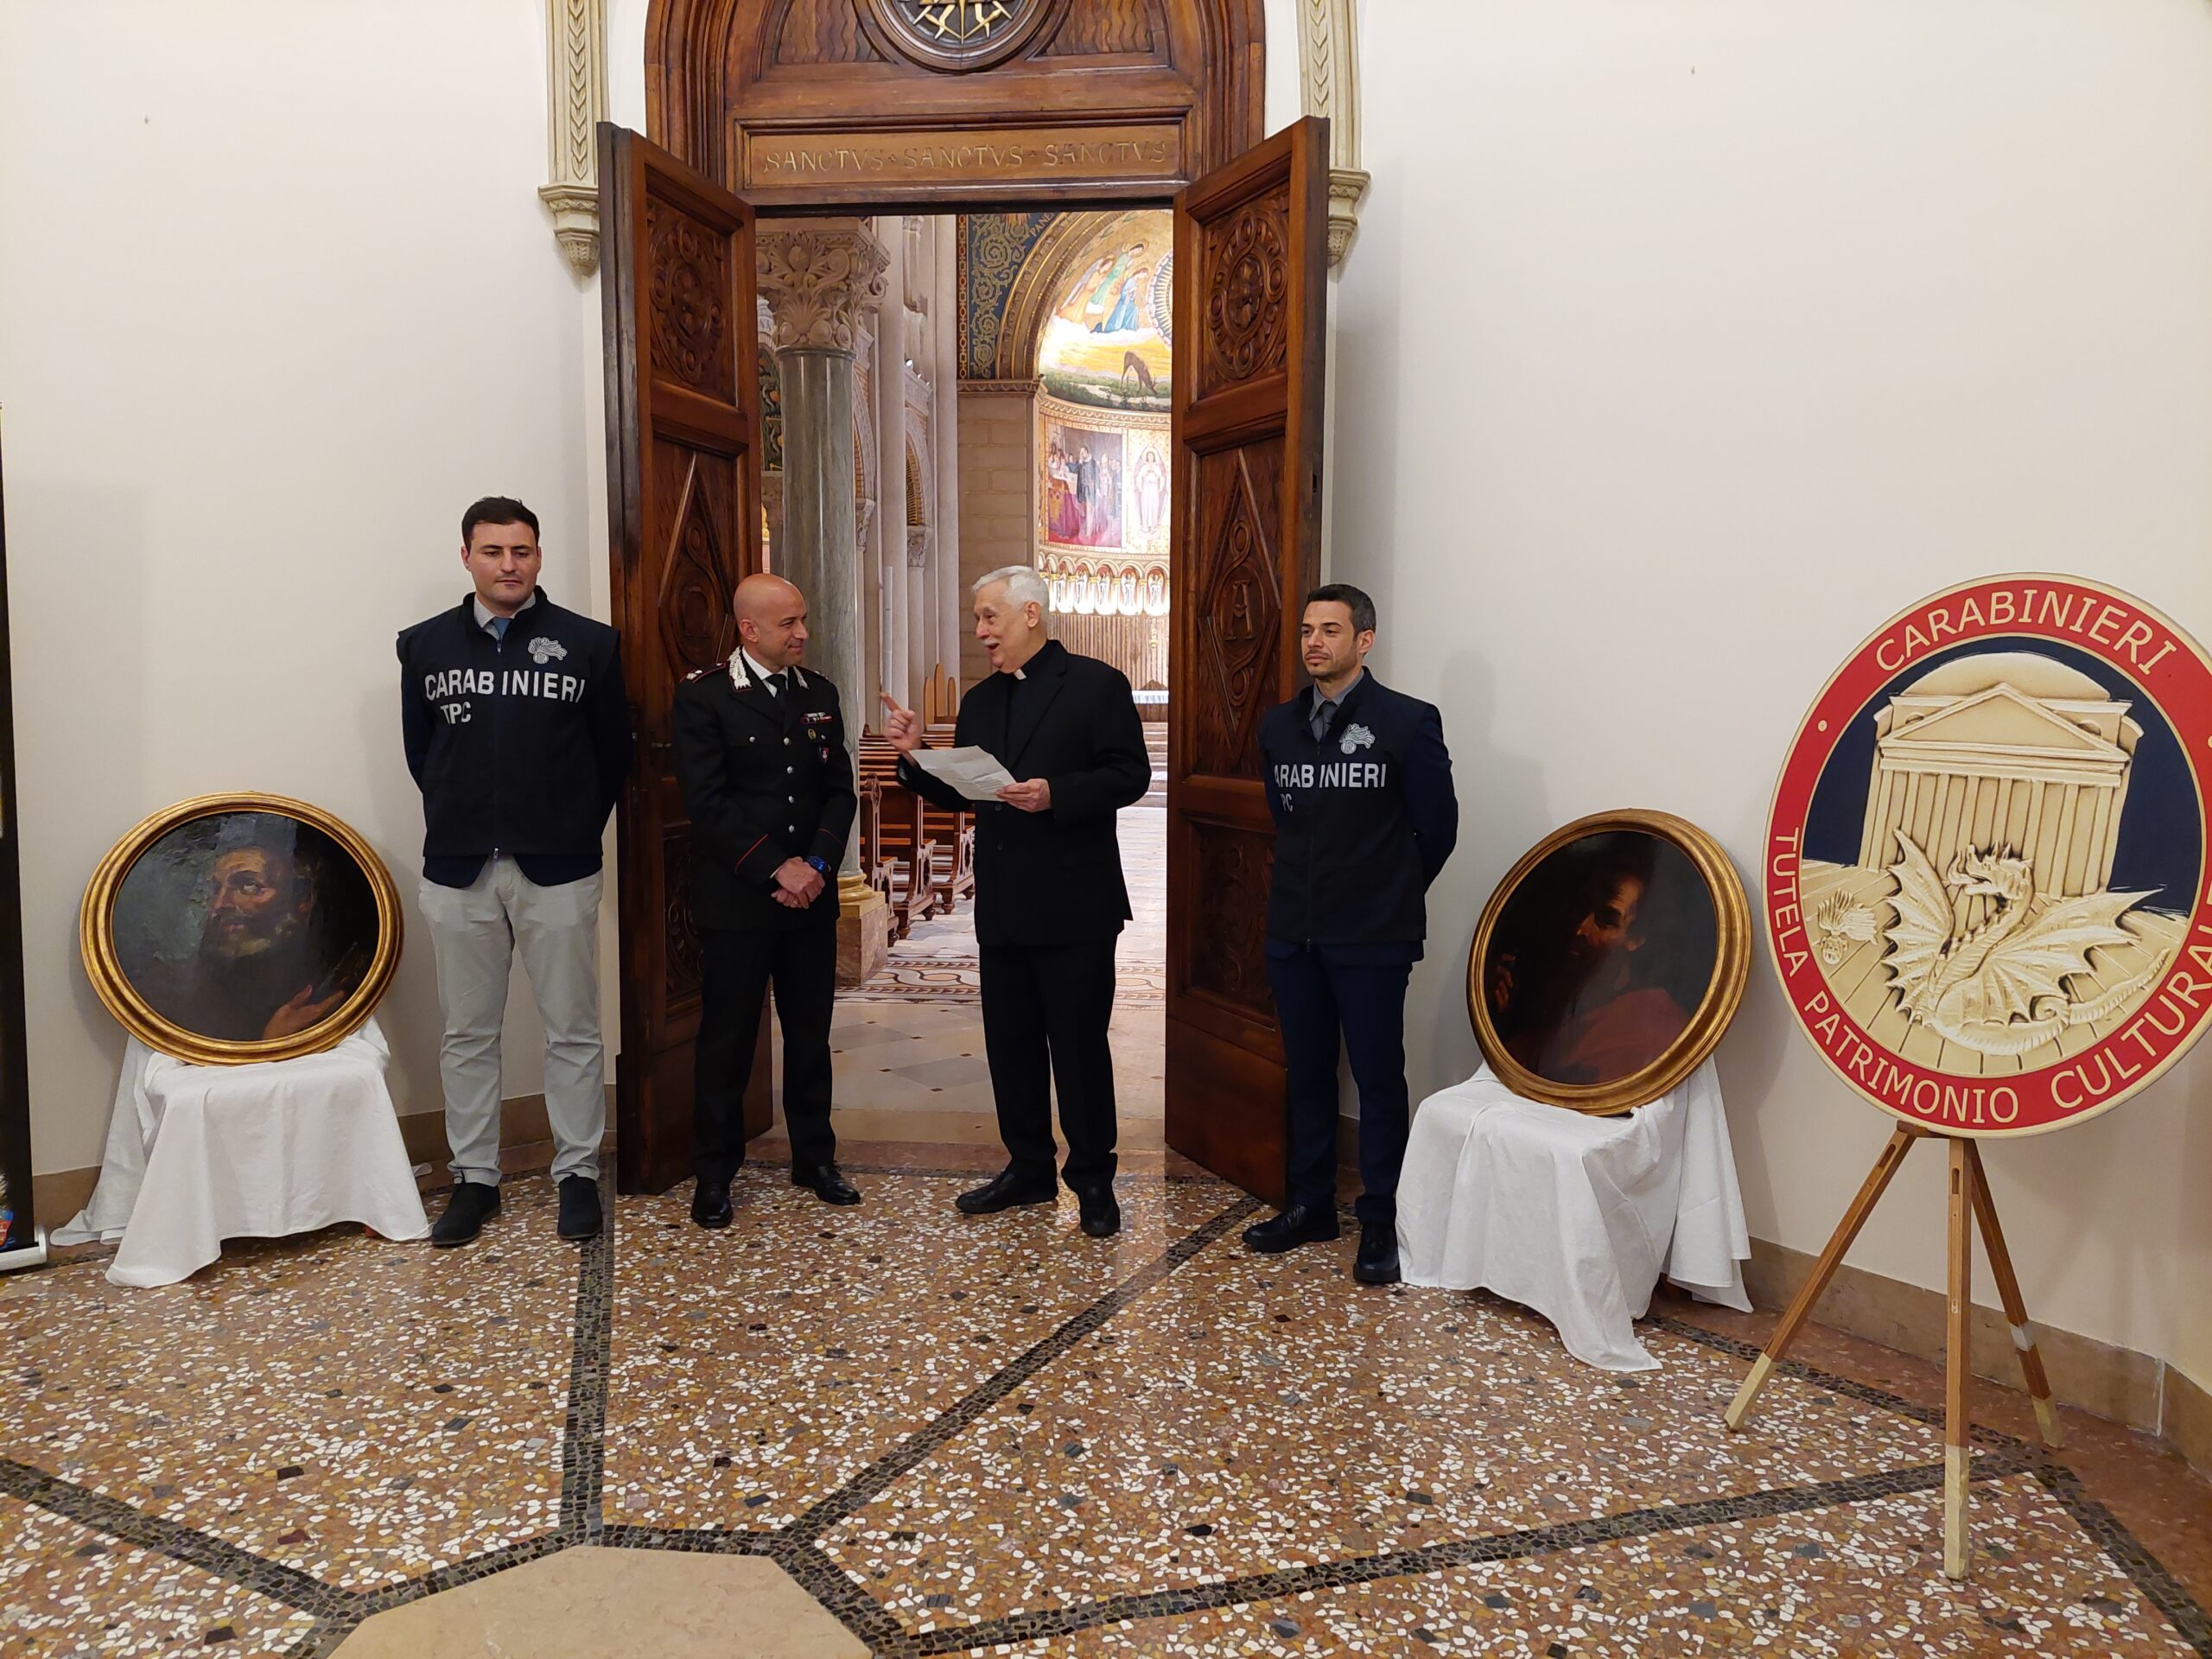 I Carabinieri Tutela Patrimonio Culturale recuperano i dipinti dei santi Pietro e Paolo rubati alla Compagnia di Gesù 28 anni fa